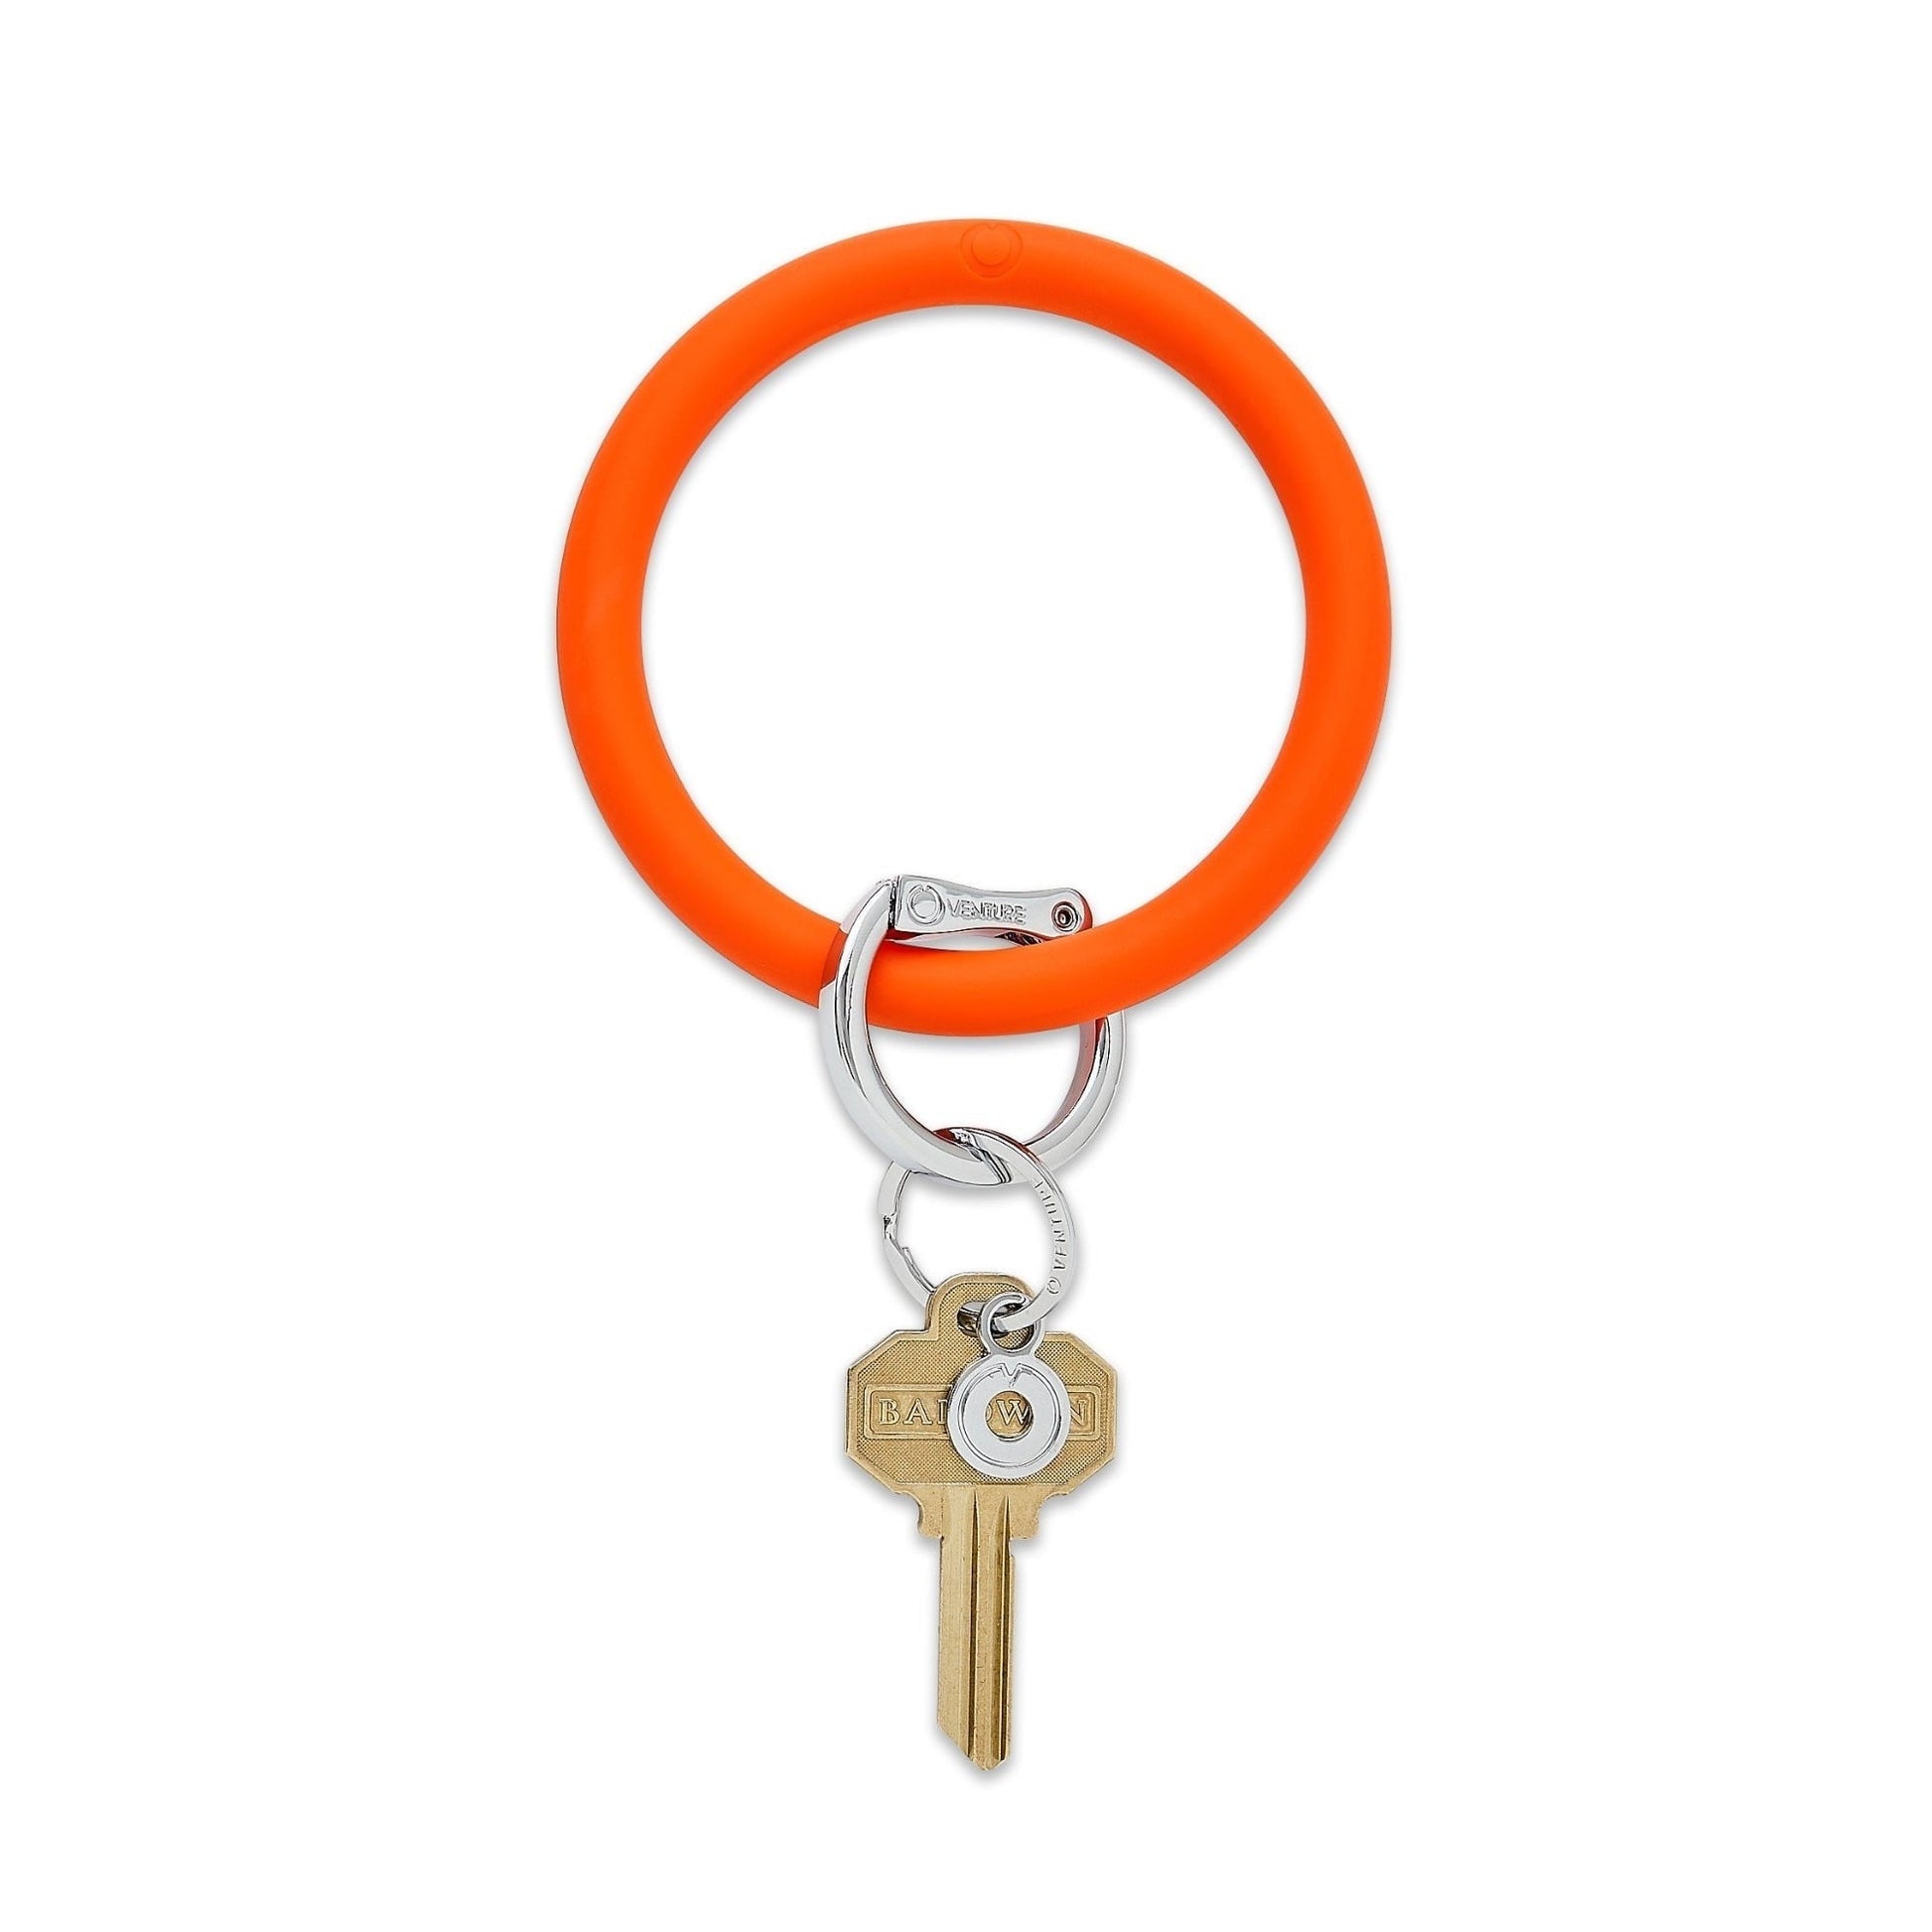 Bright Orange Silicone Big O Key Ring with silver locking clasp